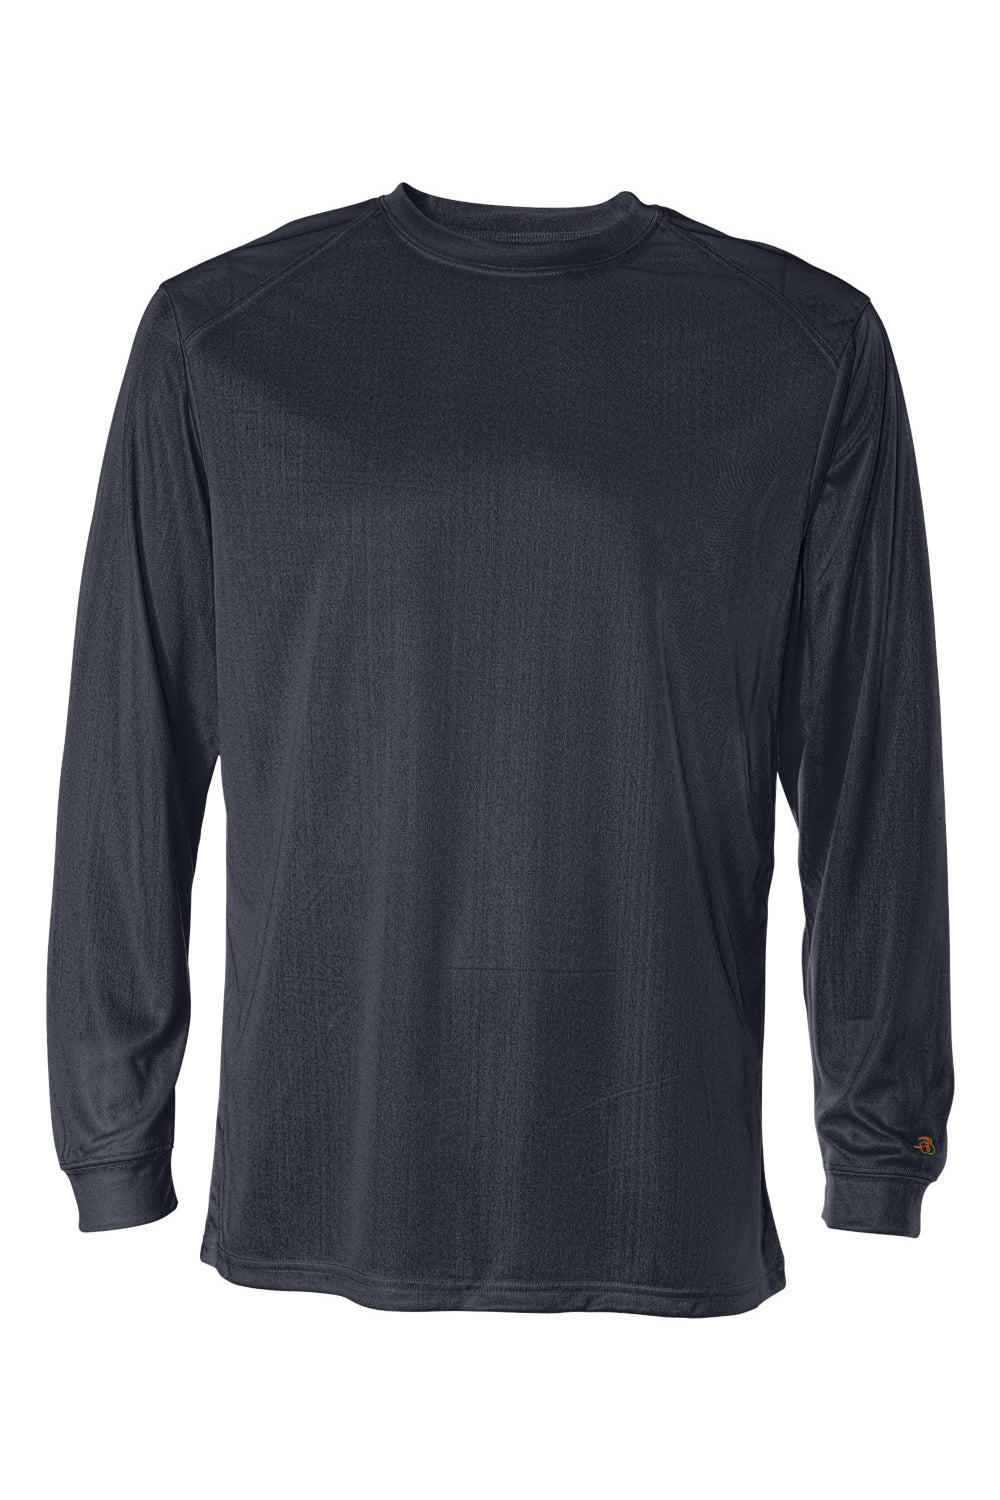 Badger 4104 Mens B-Core Moisture Wicking Long Sleeve Crewneck T-Shirt Navy Blue Flat Front